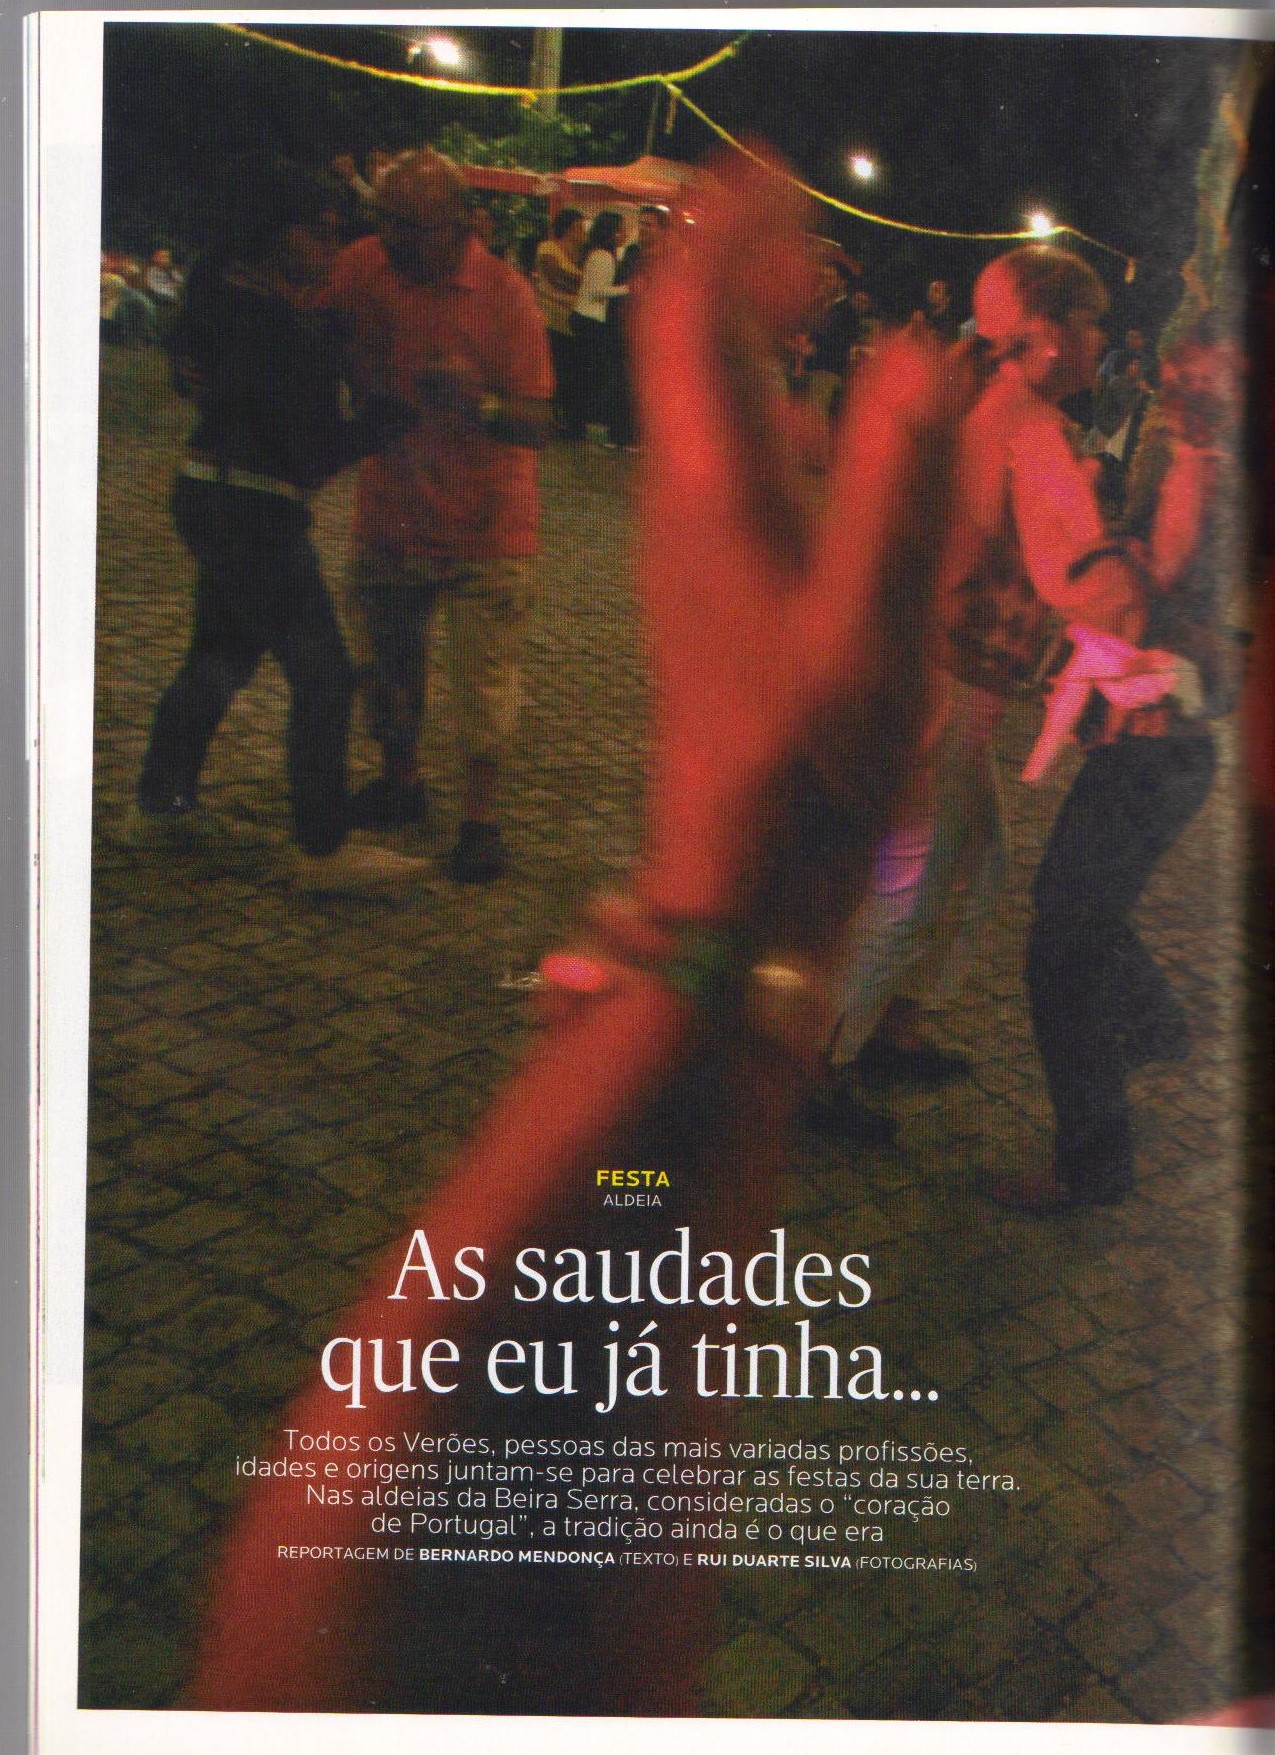 JORNAL EXPRESSO, 22 de Agosto de 2009 - N.º 1.921, Revista Única, pág. 30 - 'FESTA - ALDEIA - As saudades que eu já tinha...'